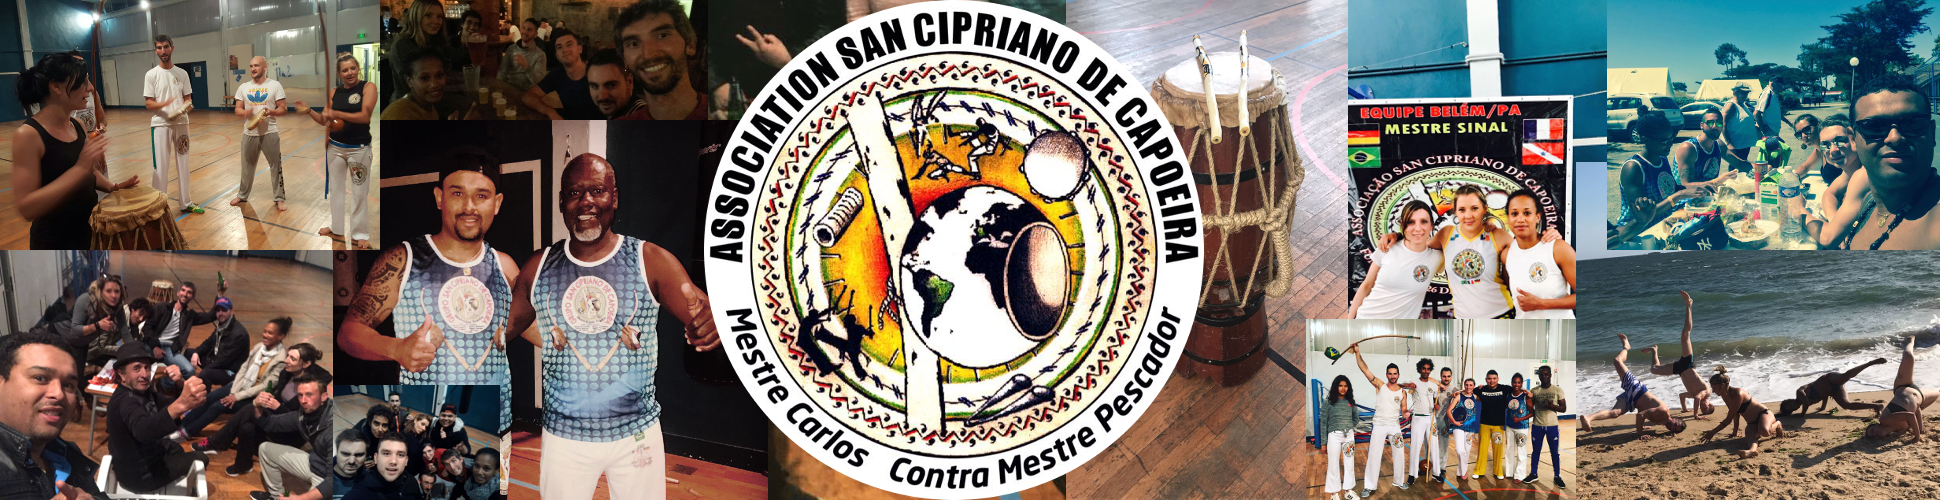 Capoeira San Cipriano Angers